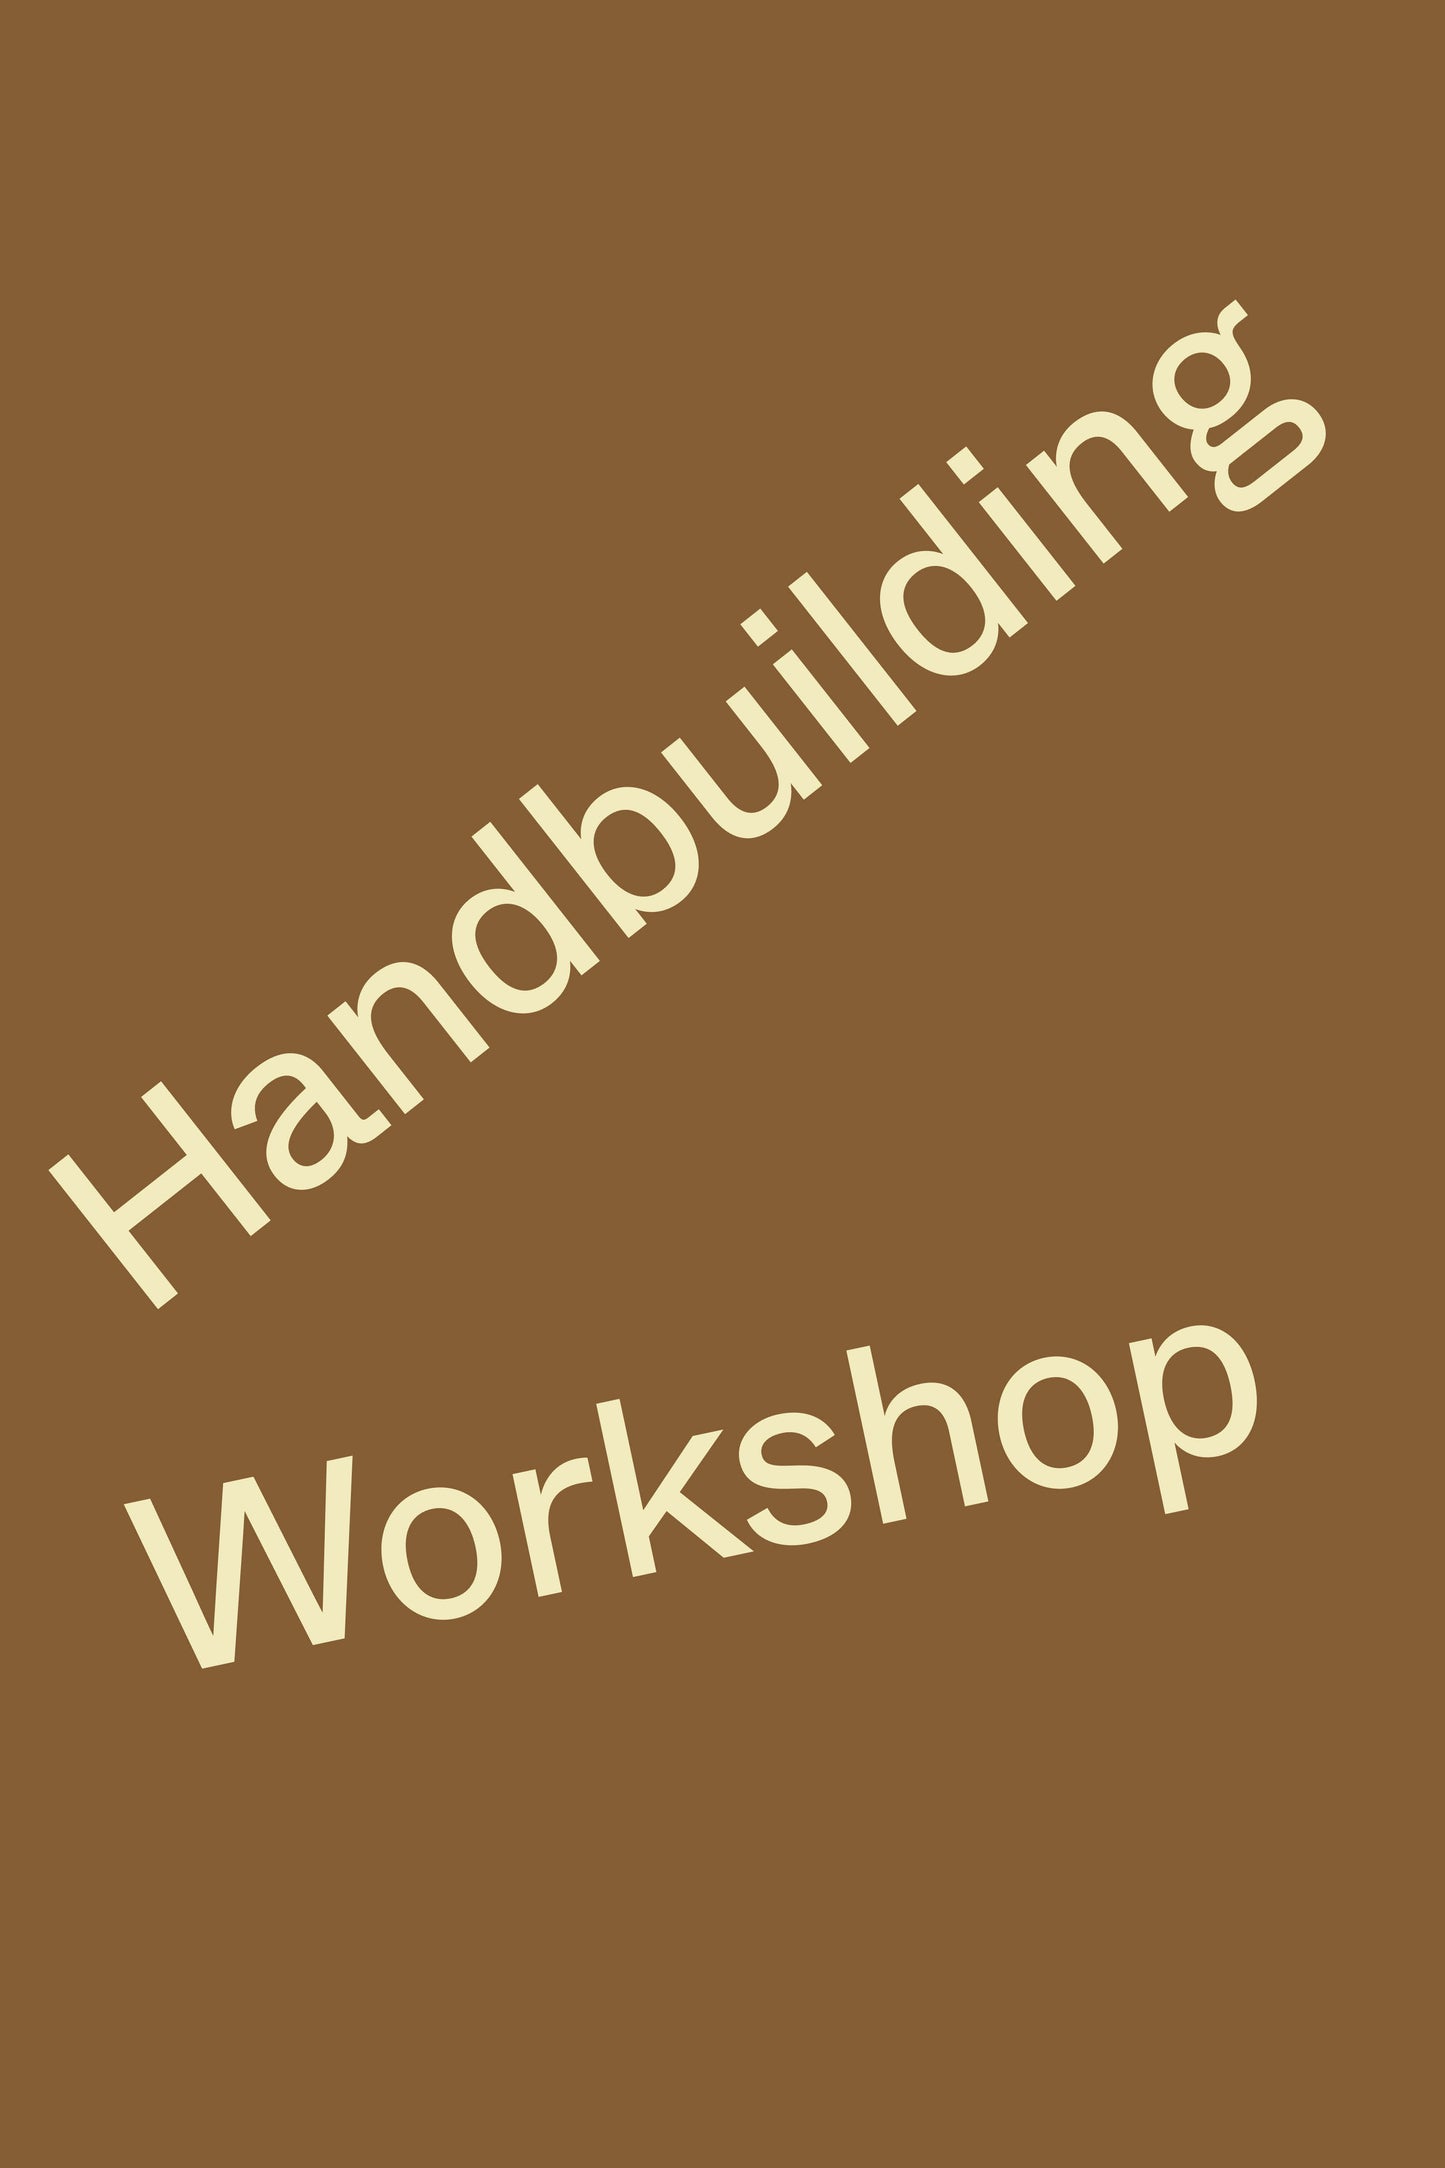 Handbuilding Workshop (Aufbautechniken) 2 x 2 Stunden